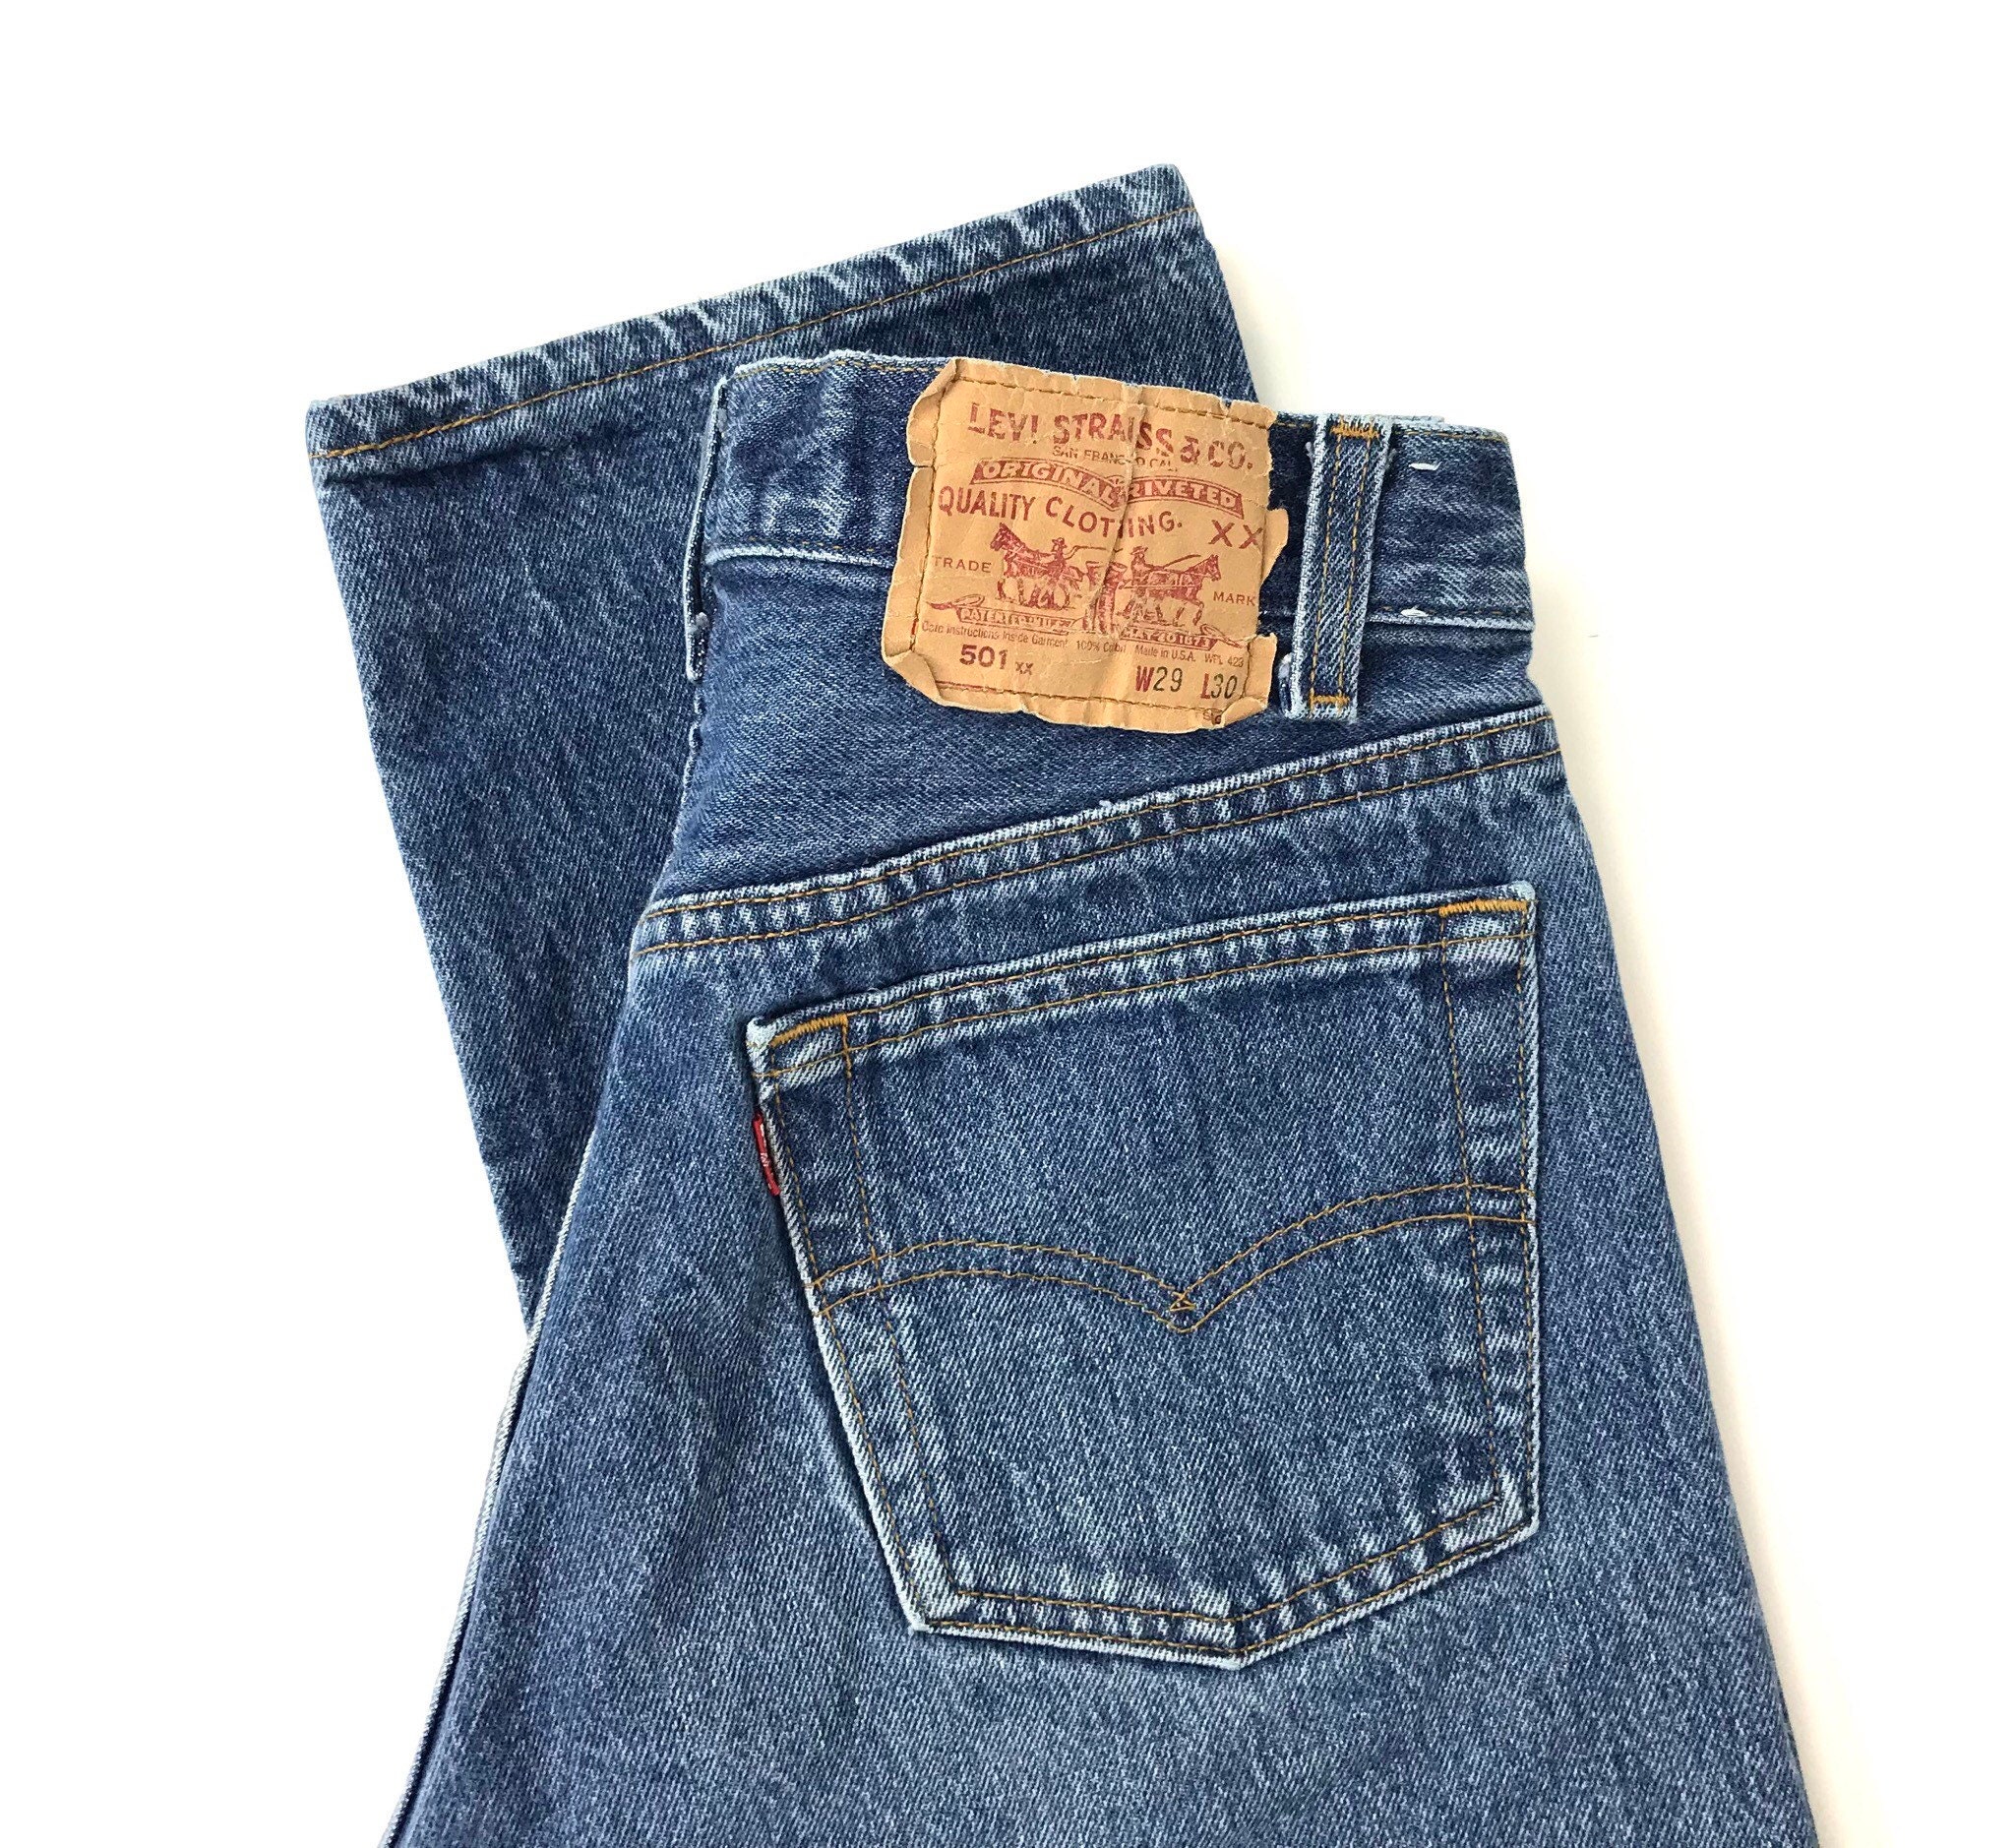 Levi's 501xx Vintage Jeans / Size 25 26